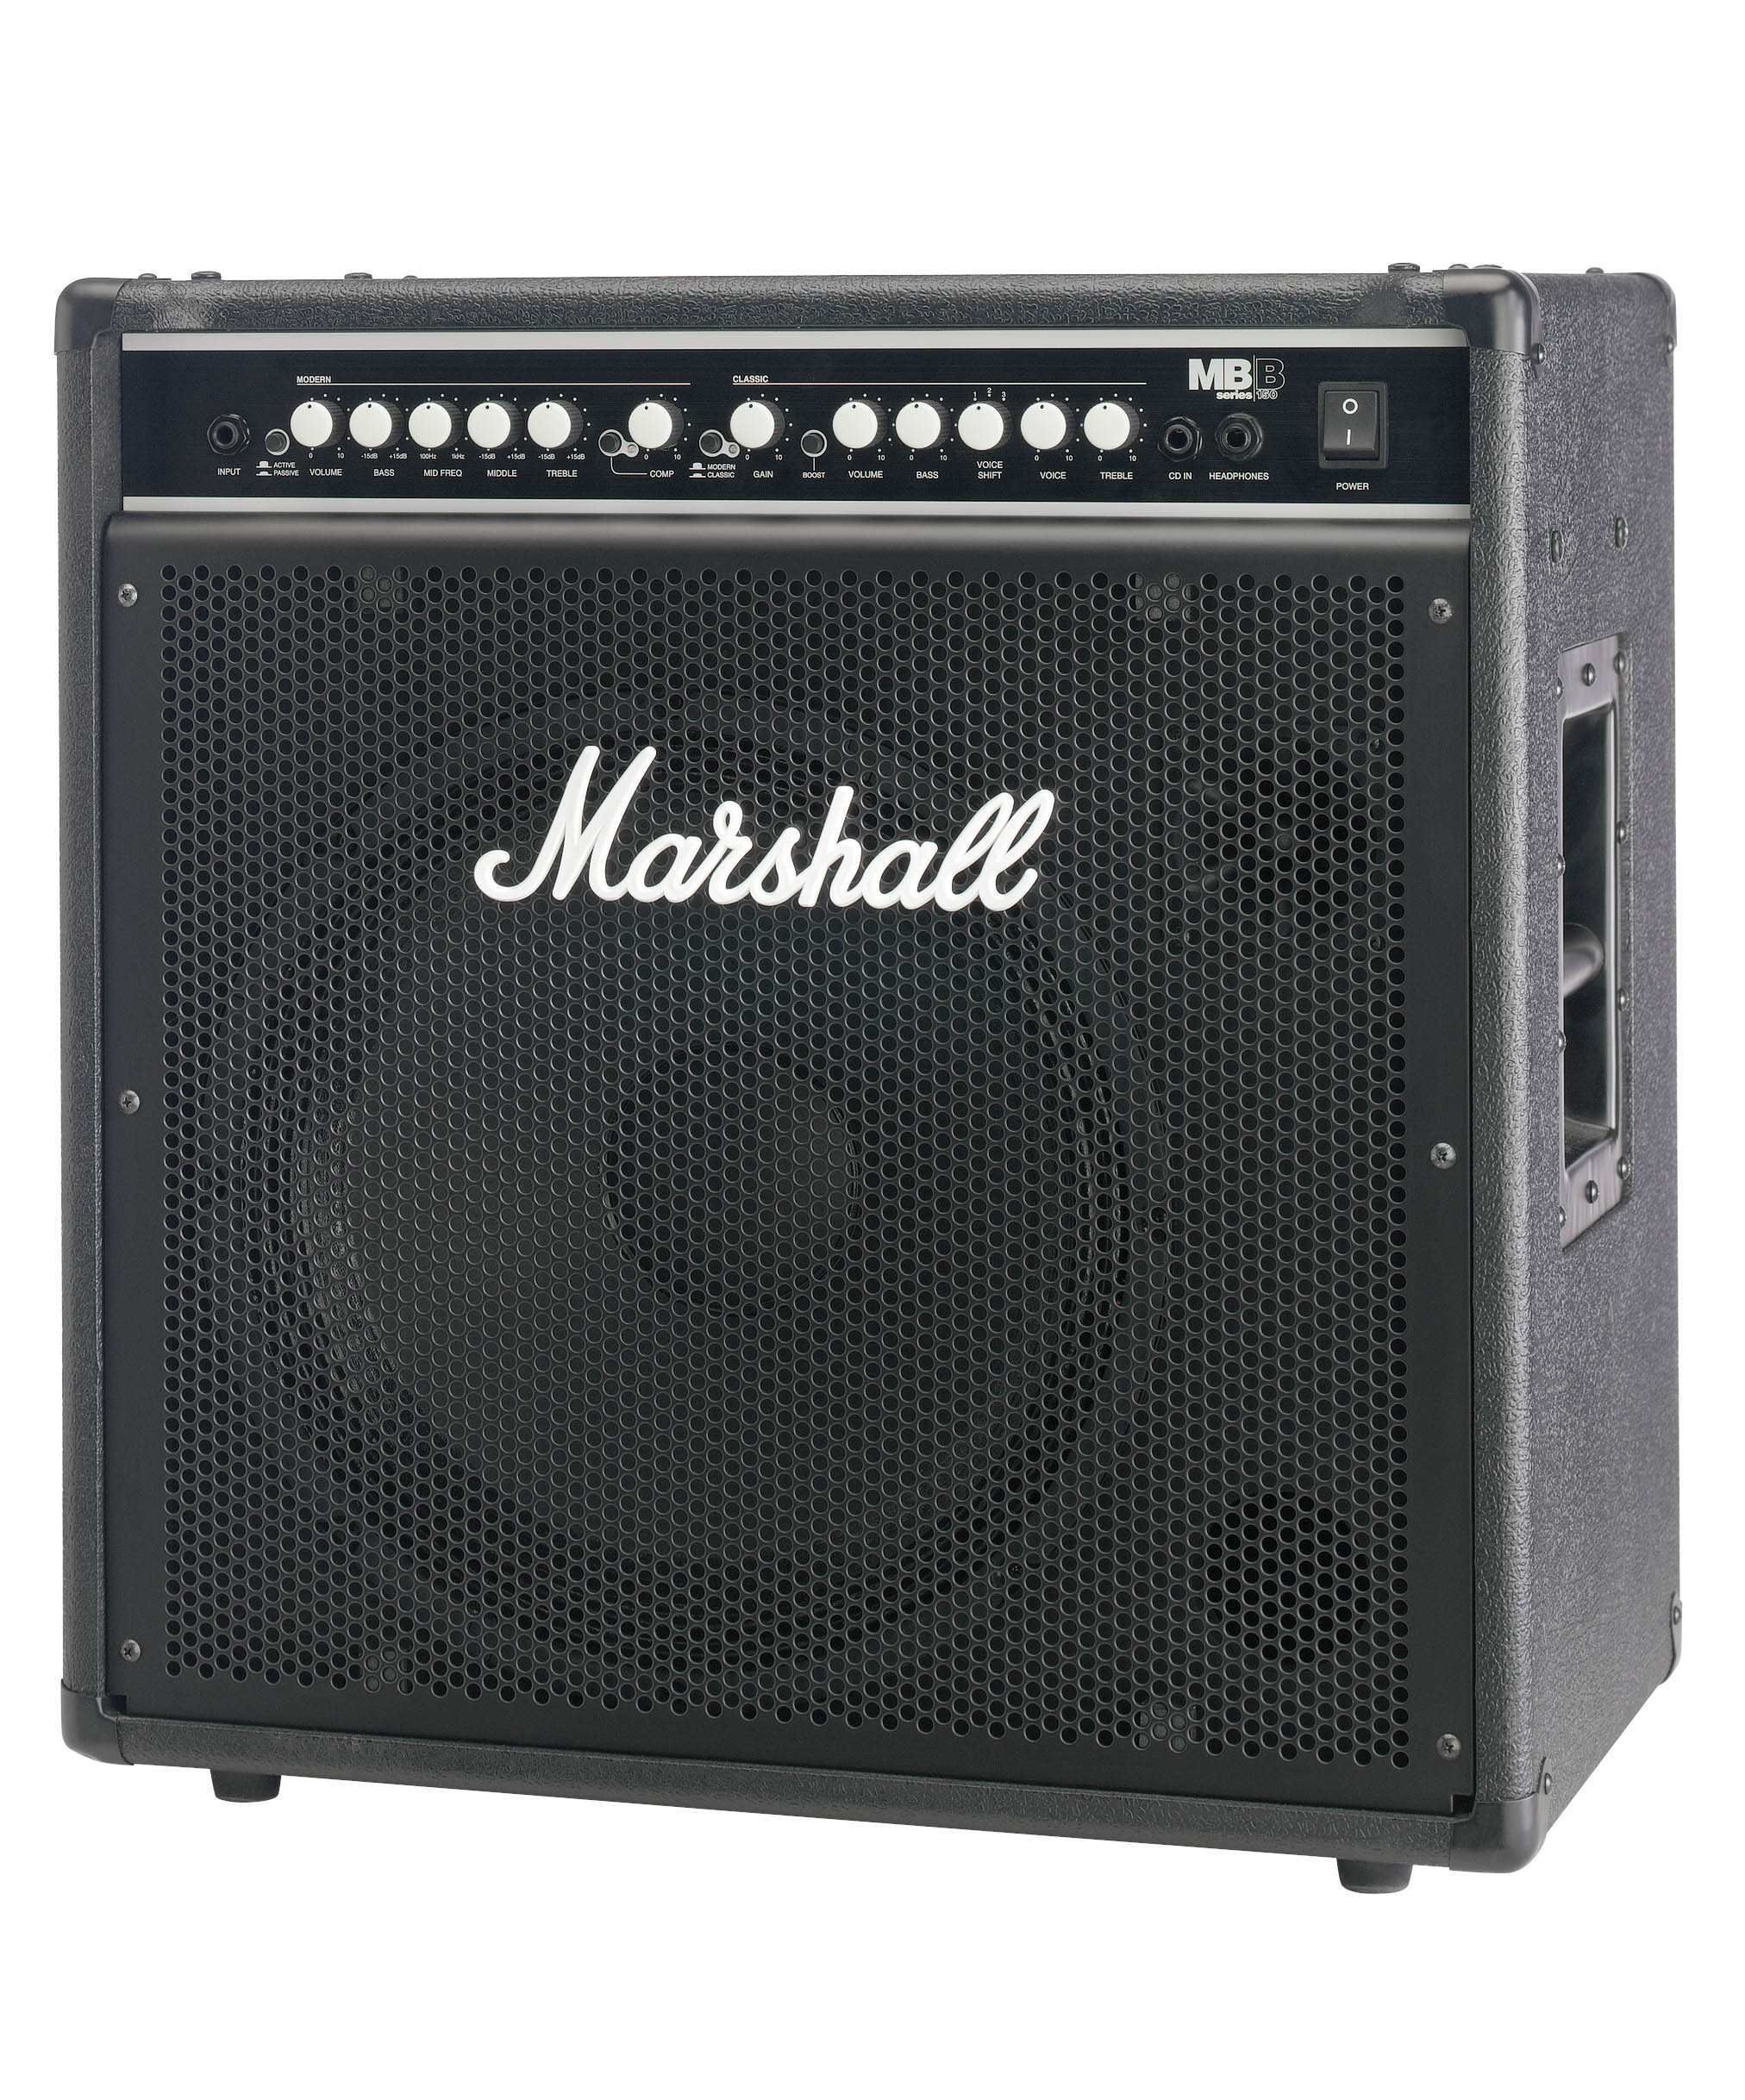 Marshall Marshall MB150 Bass Combo Amplifier, 150 W